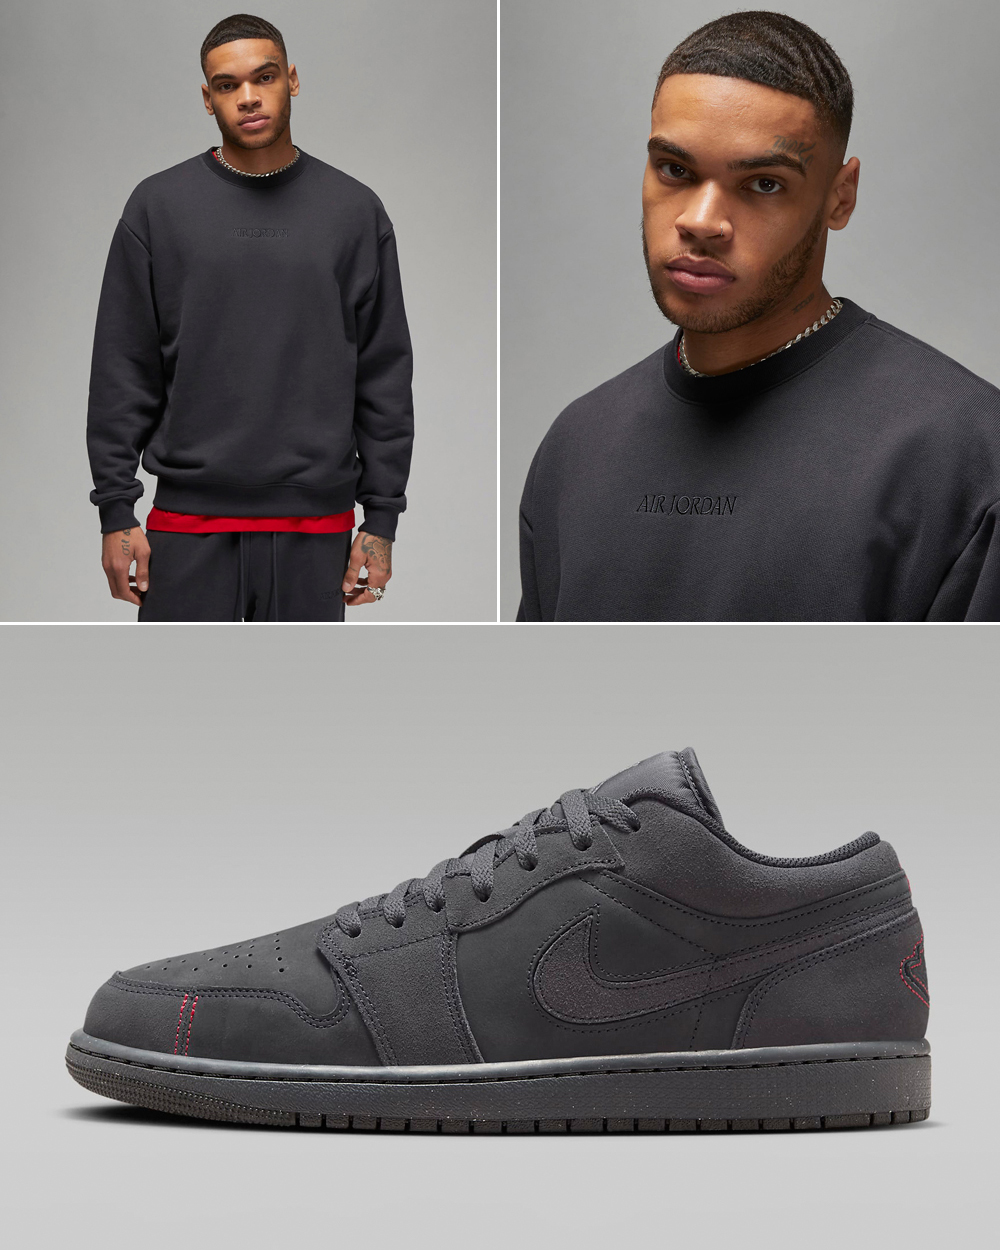 Air-Jordan-1-Low-Craft-Dark-Smoke-Grey-Sweatshirt-Matching-Outfit